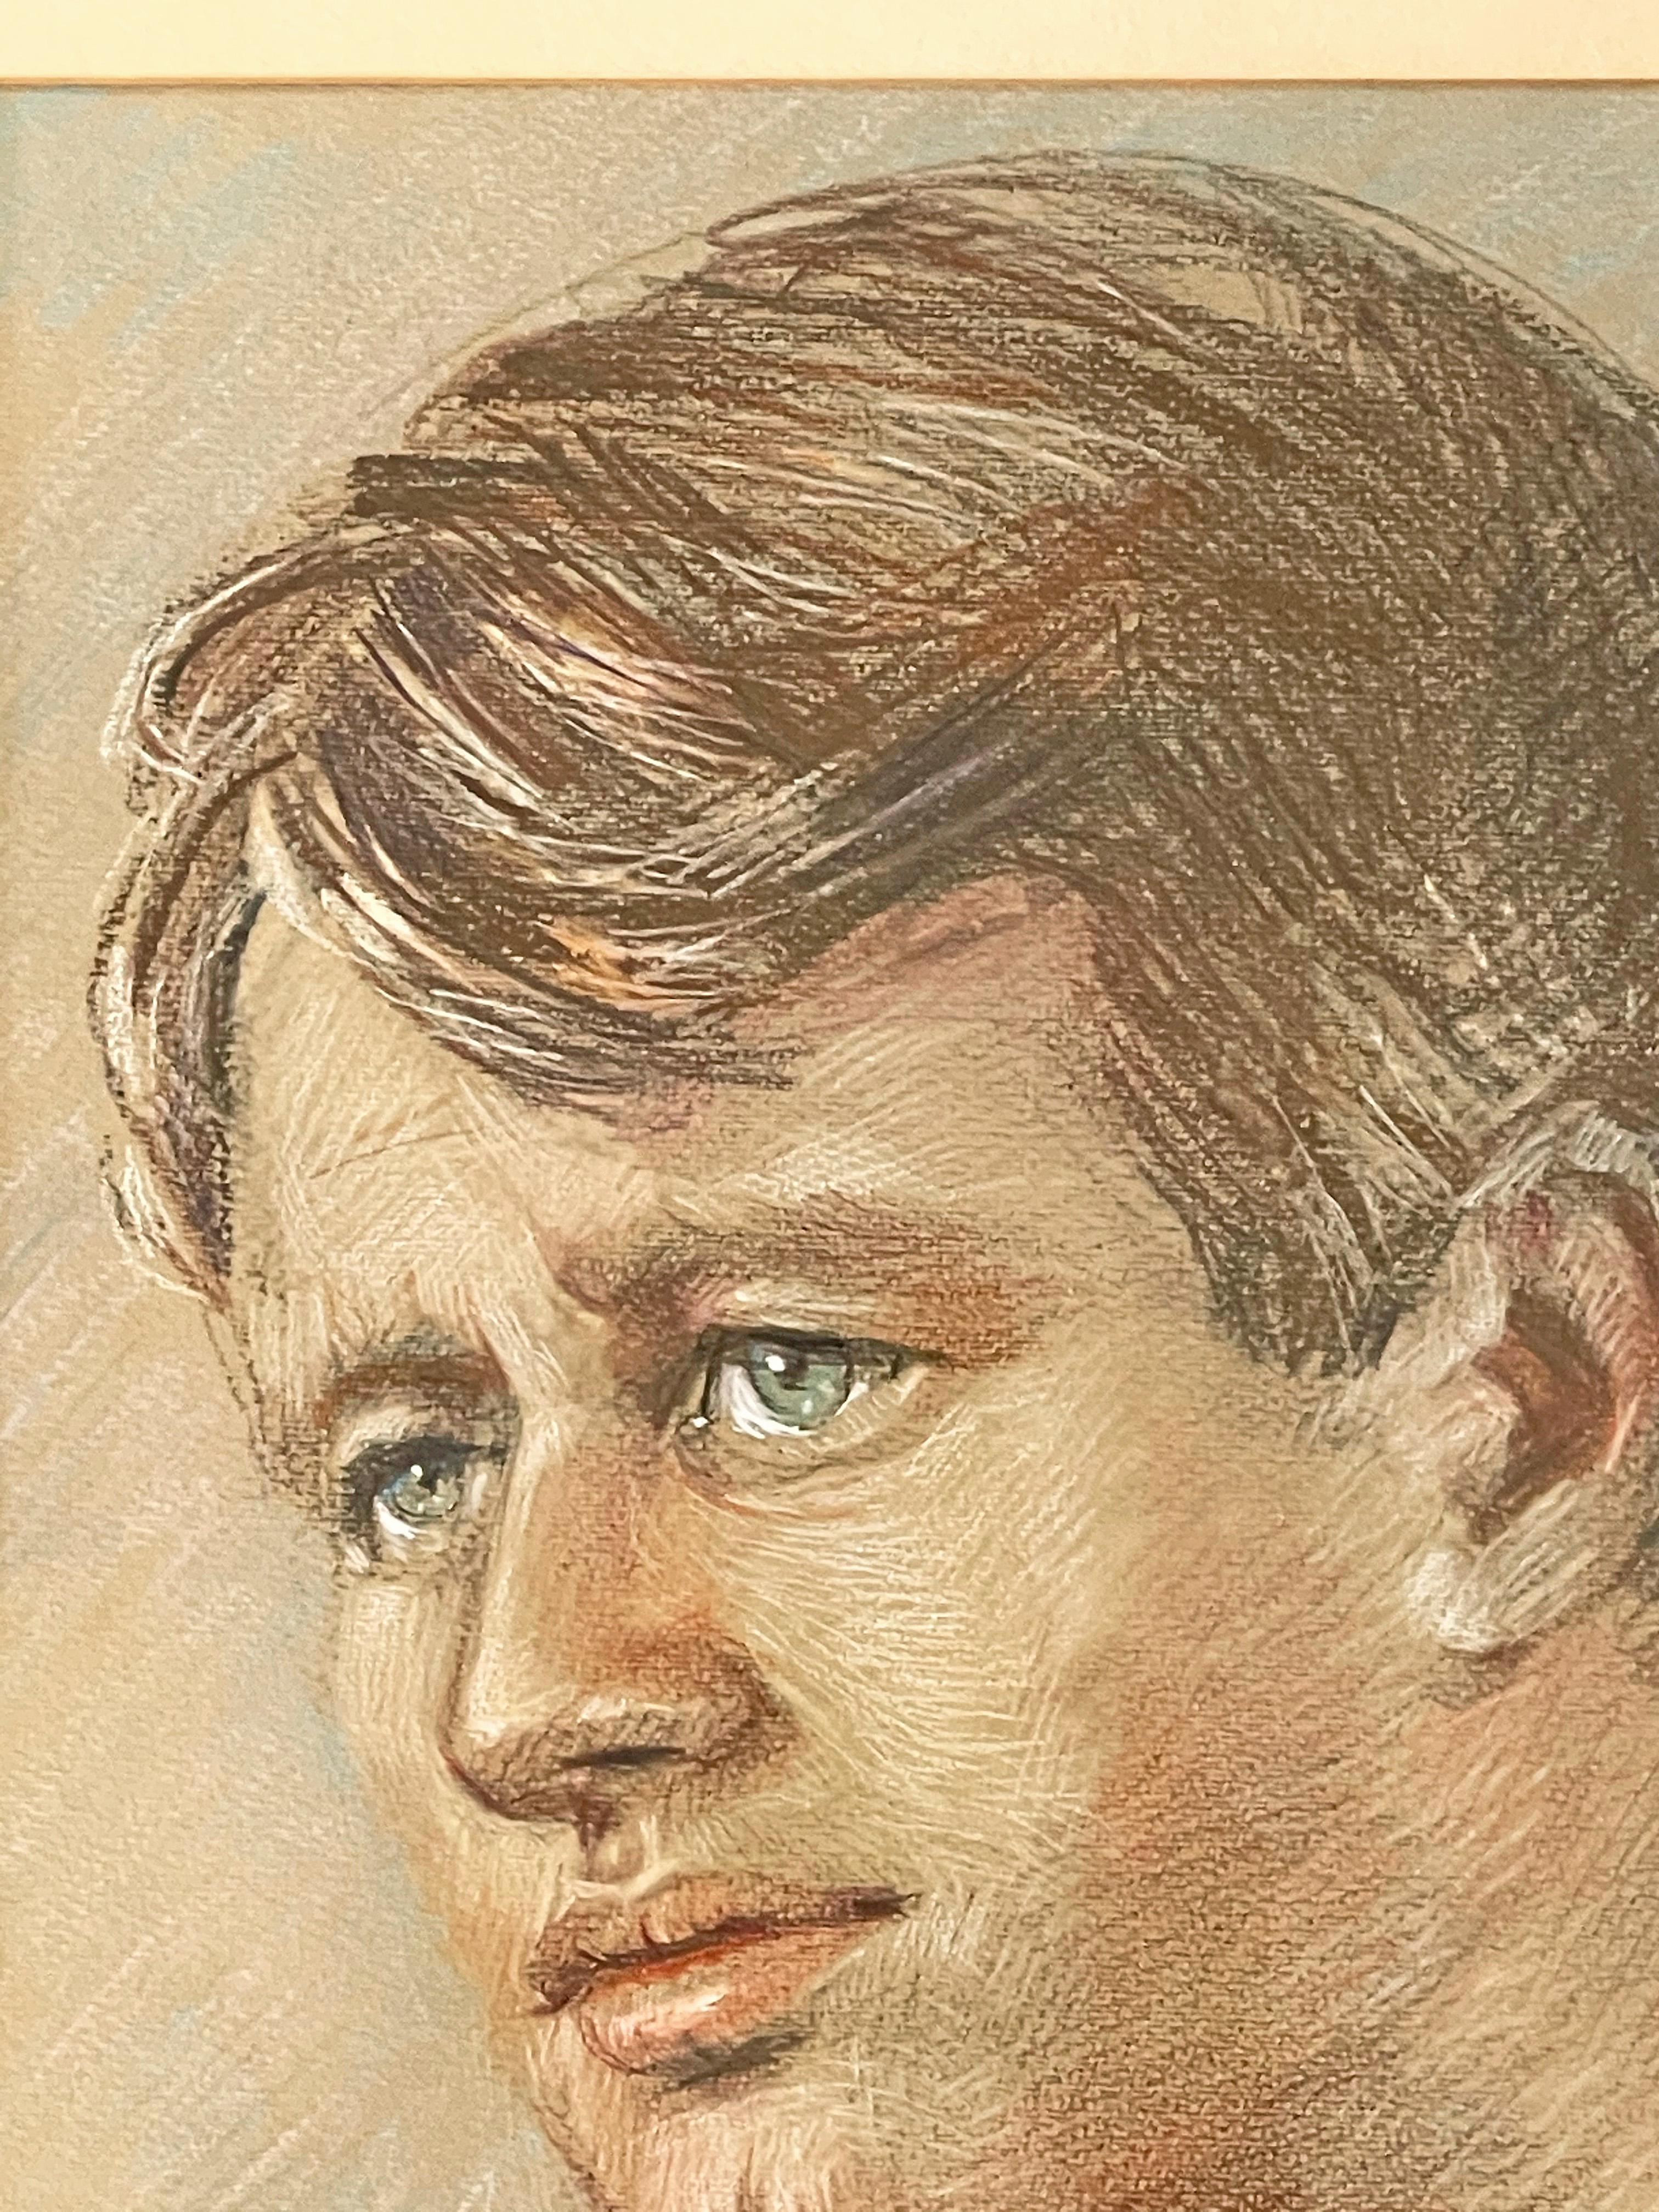 Obwohl es keine Beweise dafür gibt, dass Paul Cadmus Robert F. Kennedy kannte, deutet dieses Porträt eines gut aussehenden, jugendlichen Mannes mit blauen Augen und dichtem Haarschopf darauf hin, dass der Künstler Kennedy bewunderte und dieses